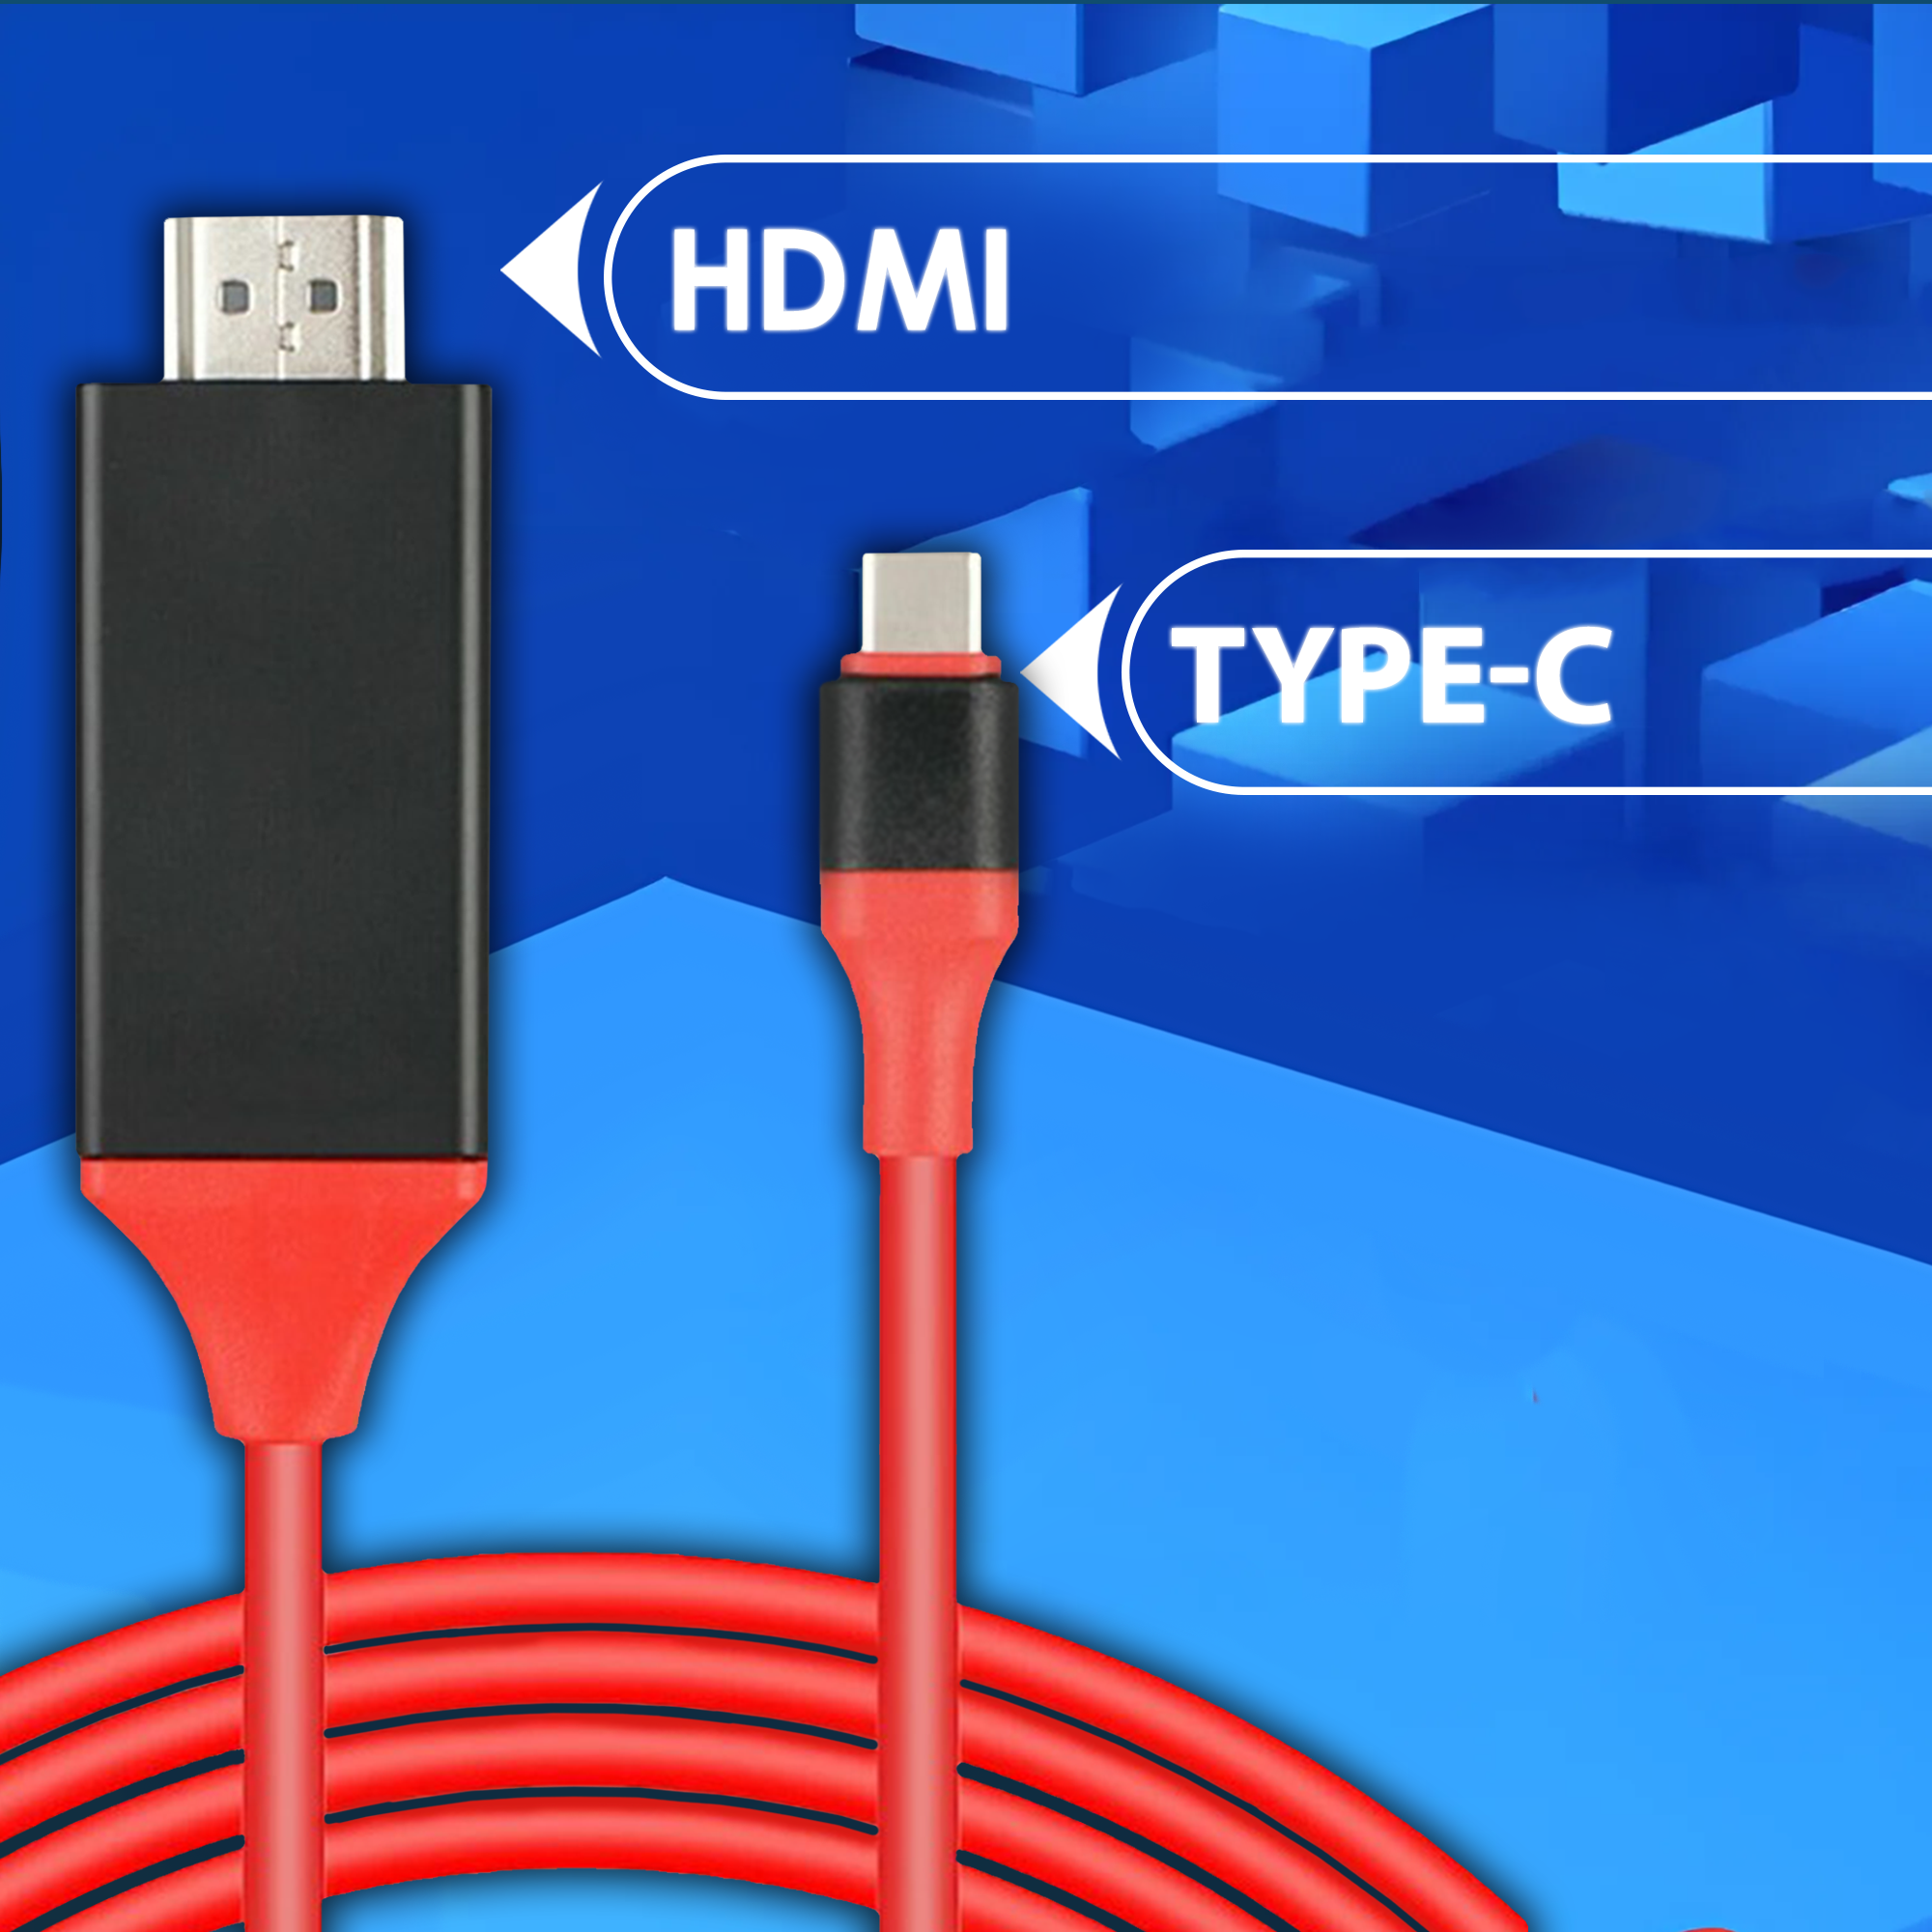 Цифровой HDMI кабель удлинитель для Lightning с питанием через USB 2 метра AMFOX красный шнур для передачи изображения и видео с телефона на монитор